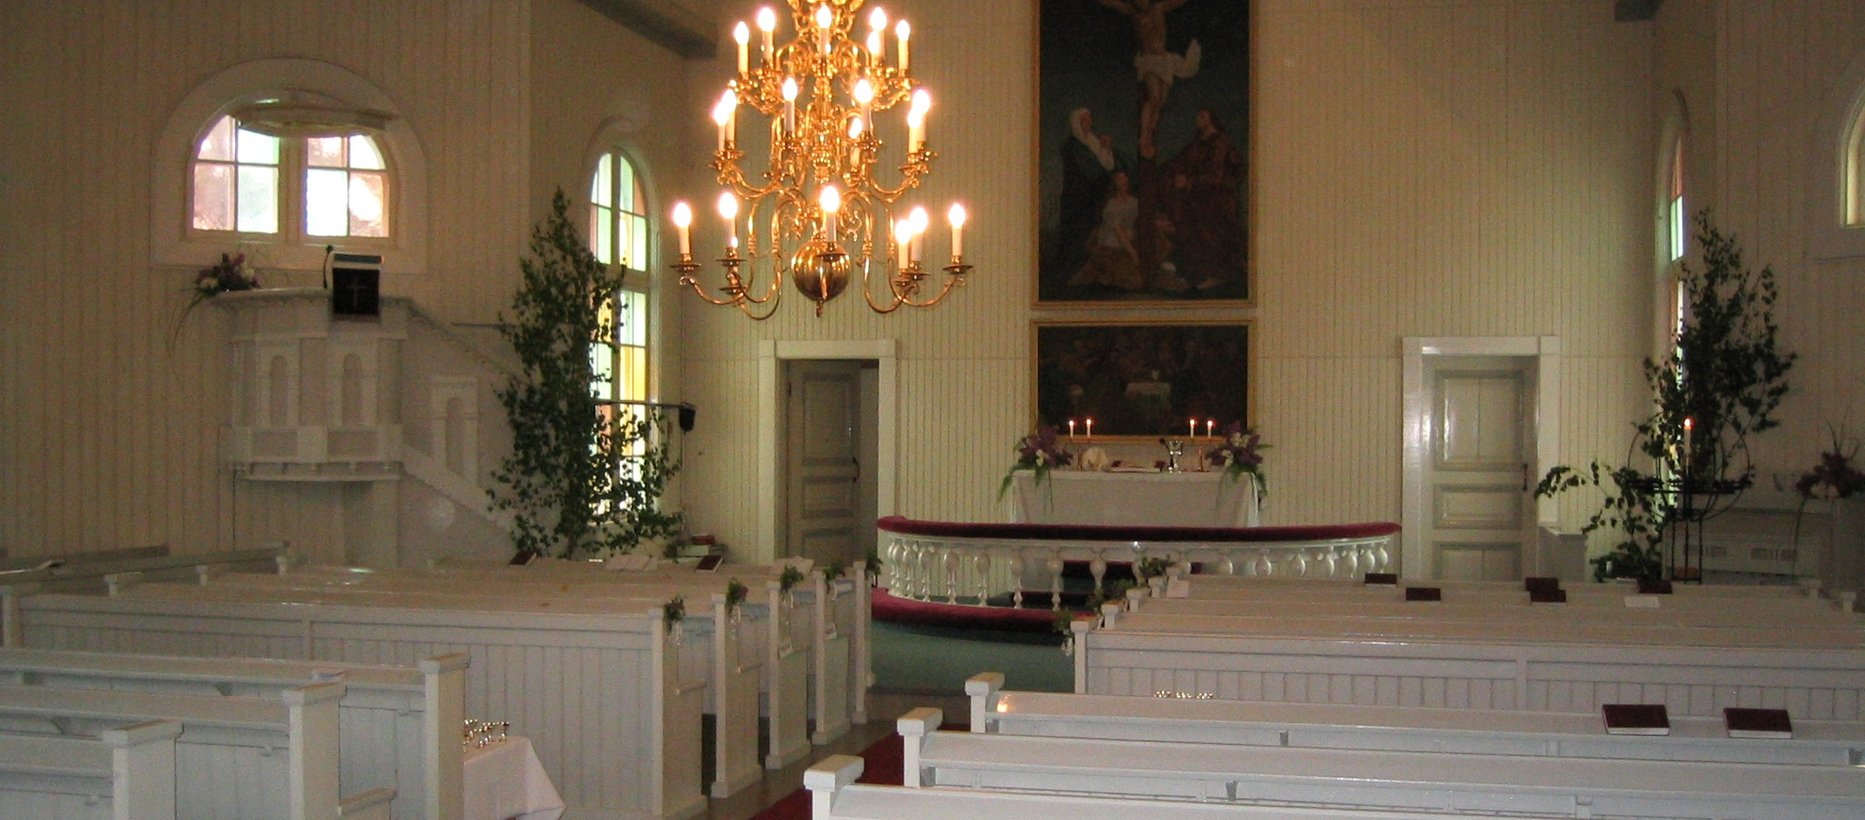 Eräjärven kirkko, kirkkosali. Kuva: Raimo Lietsala.